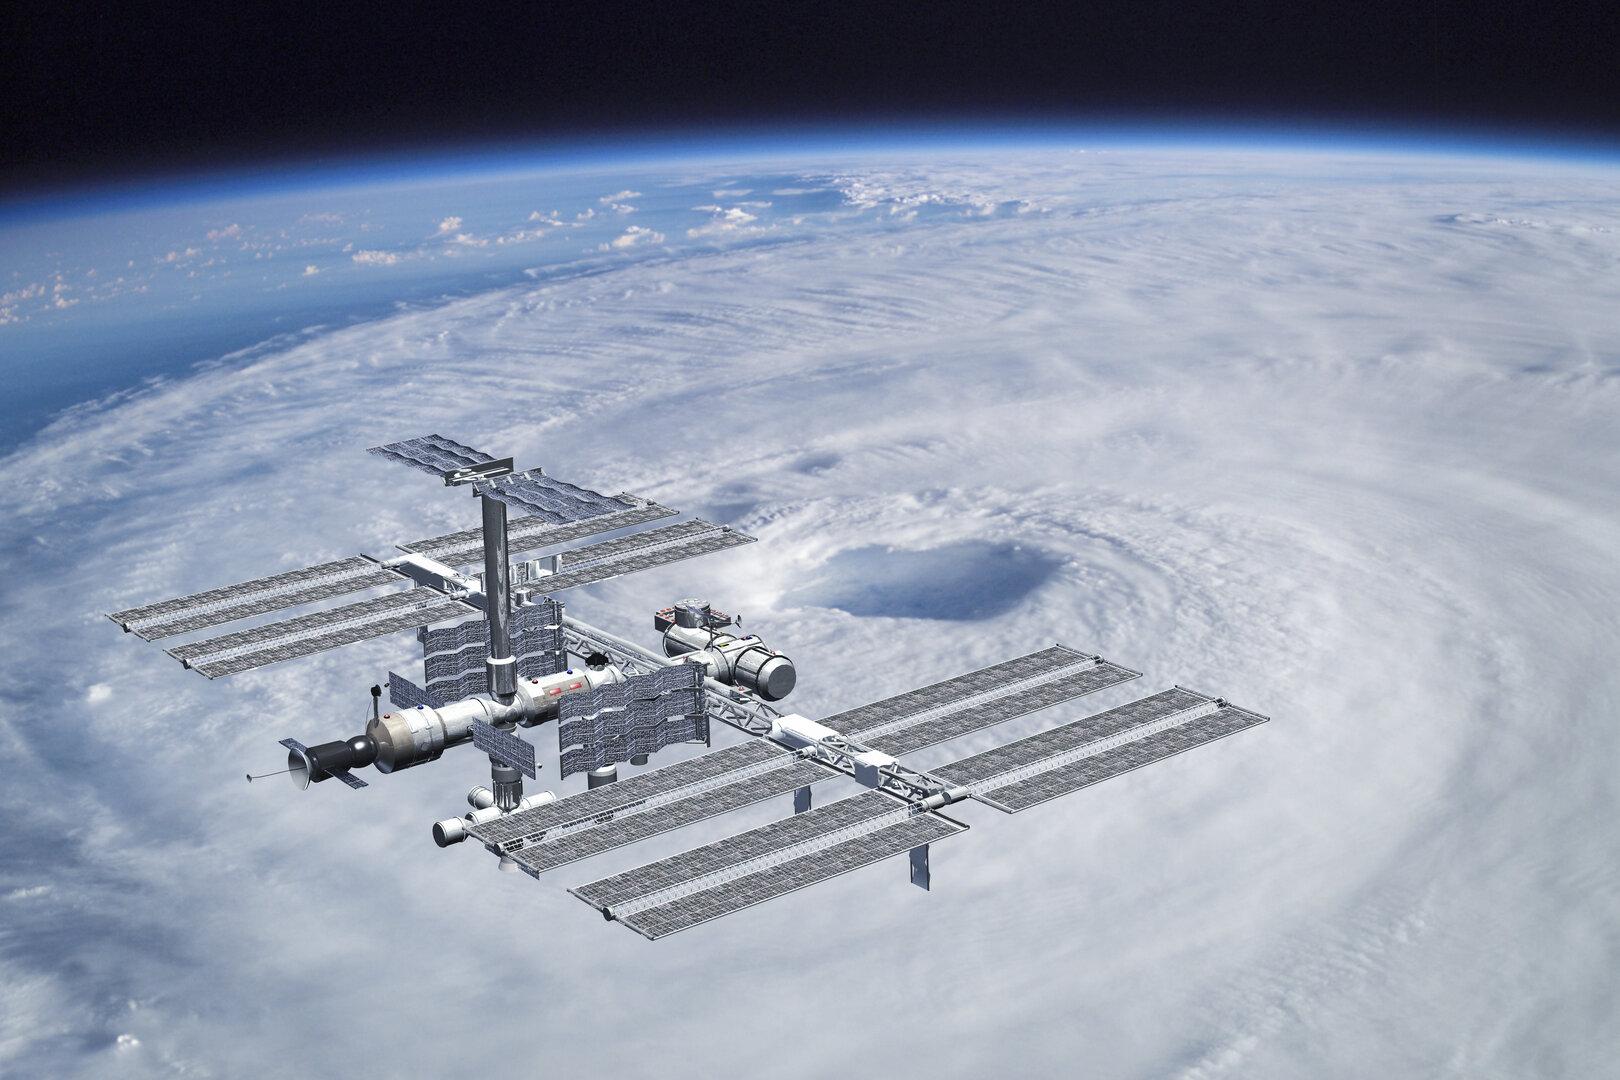 Teil von Raumstation ISS auf Haus in Florida gekracht